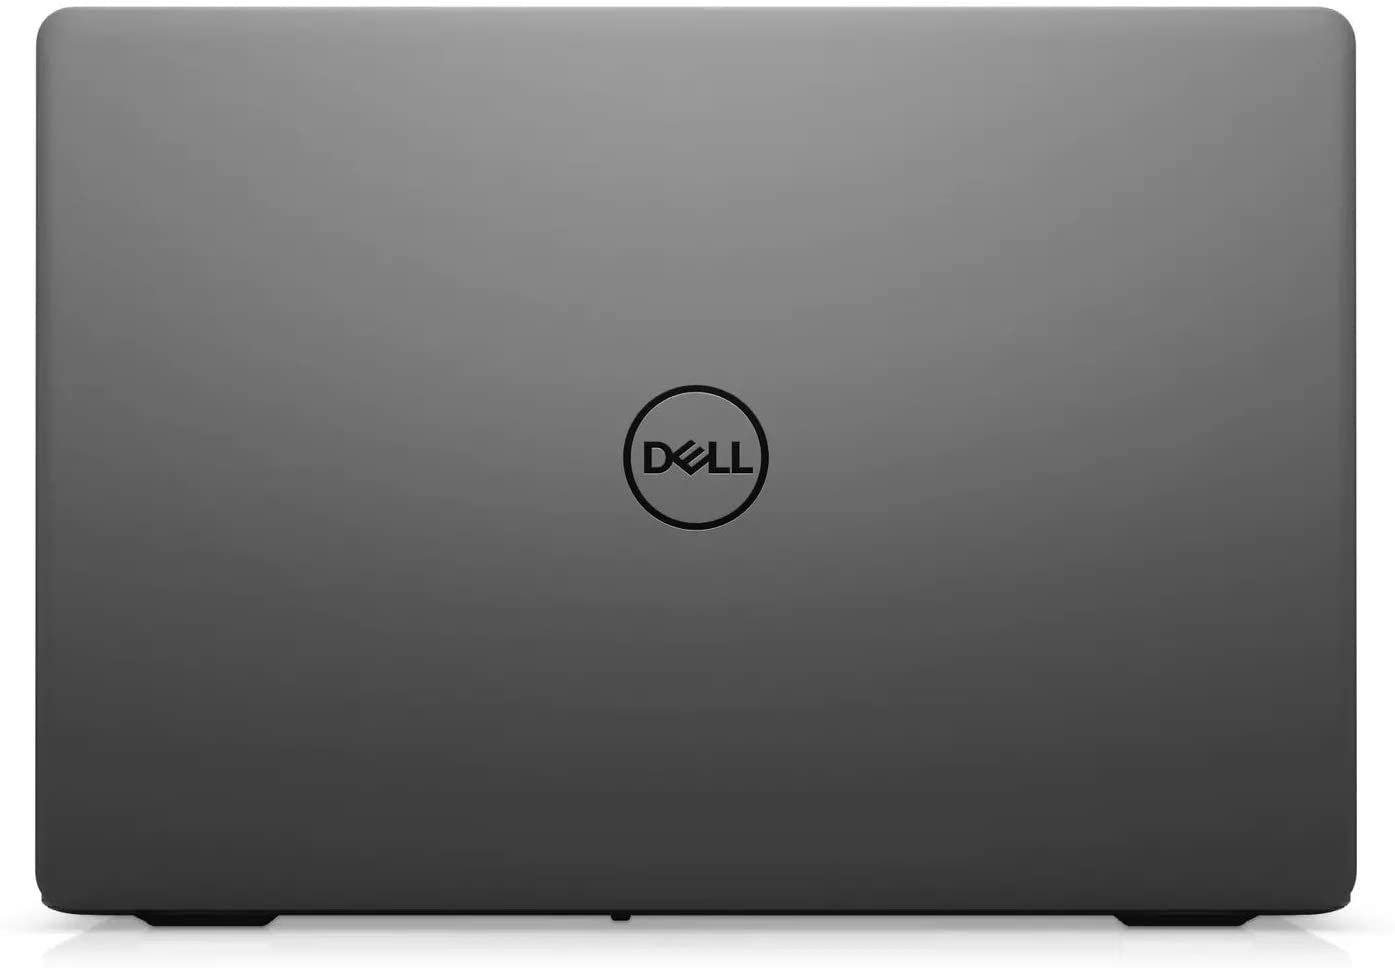 Laptop Dell Inspiron 3501 Core i5-1035G1 / RAM 12GB / SSD 256GB / Full HD Touch / Black - Hàng Nhập Khẩu Mỹ